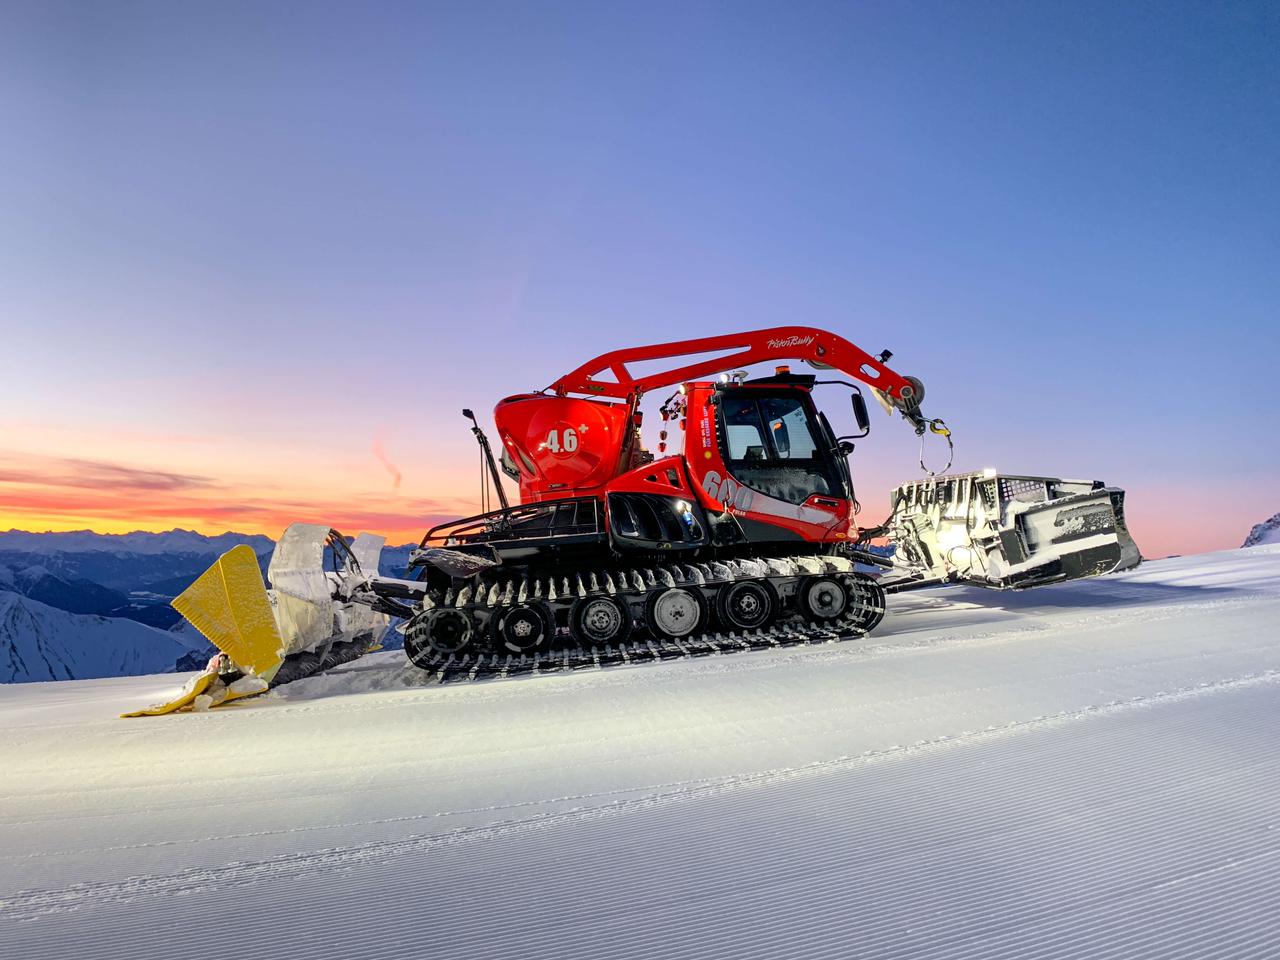 Llegó a Lago Hermoso Ski Resort un nuevo pisa pista de última generación. 